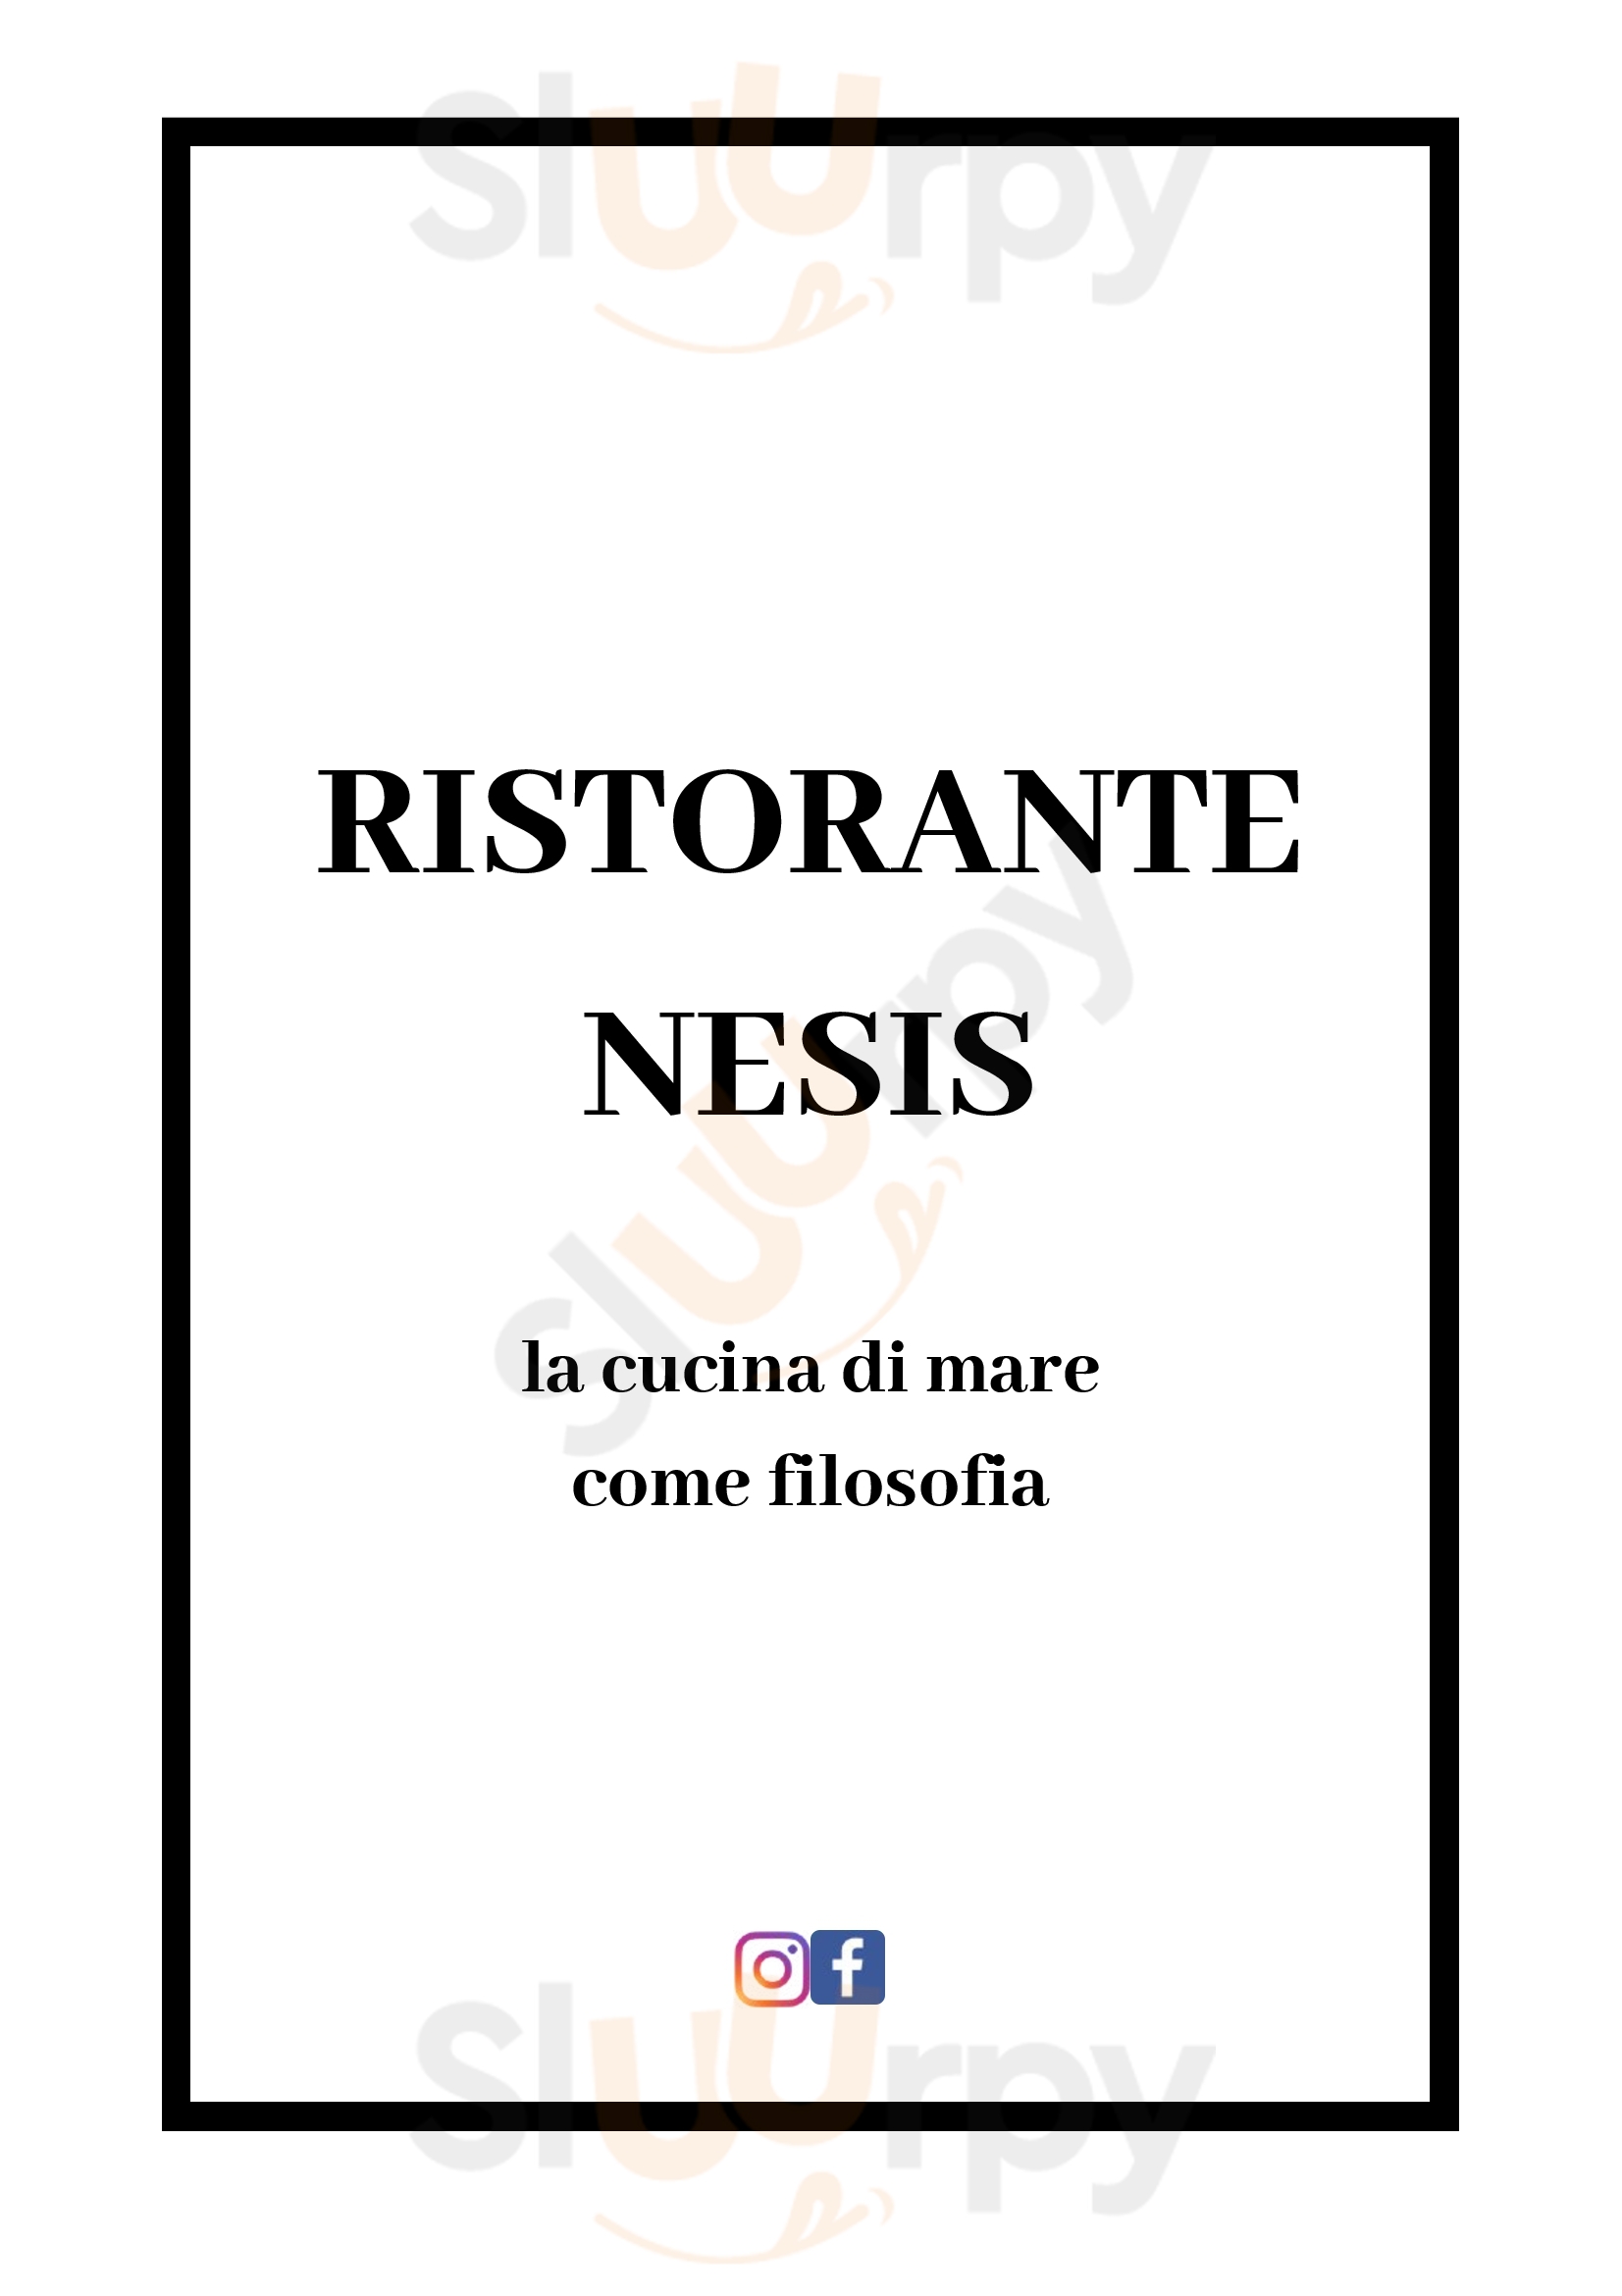 Ristorante Nesis Cesano Maderno menù 1 pagina